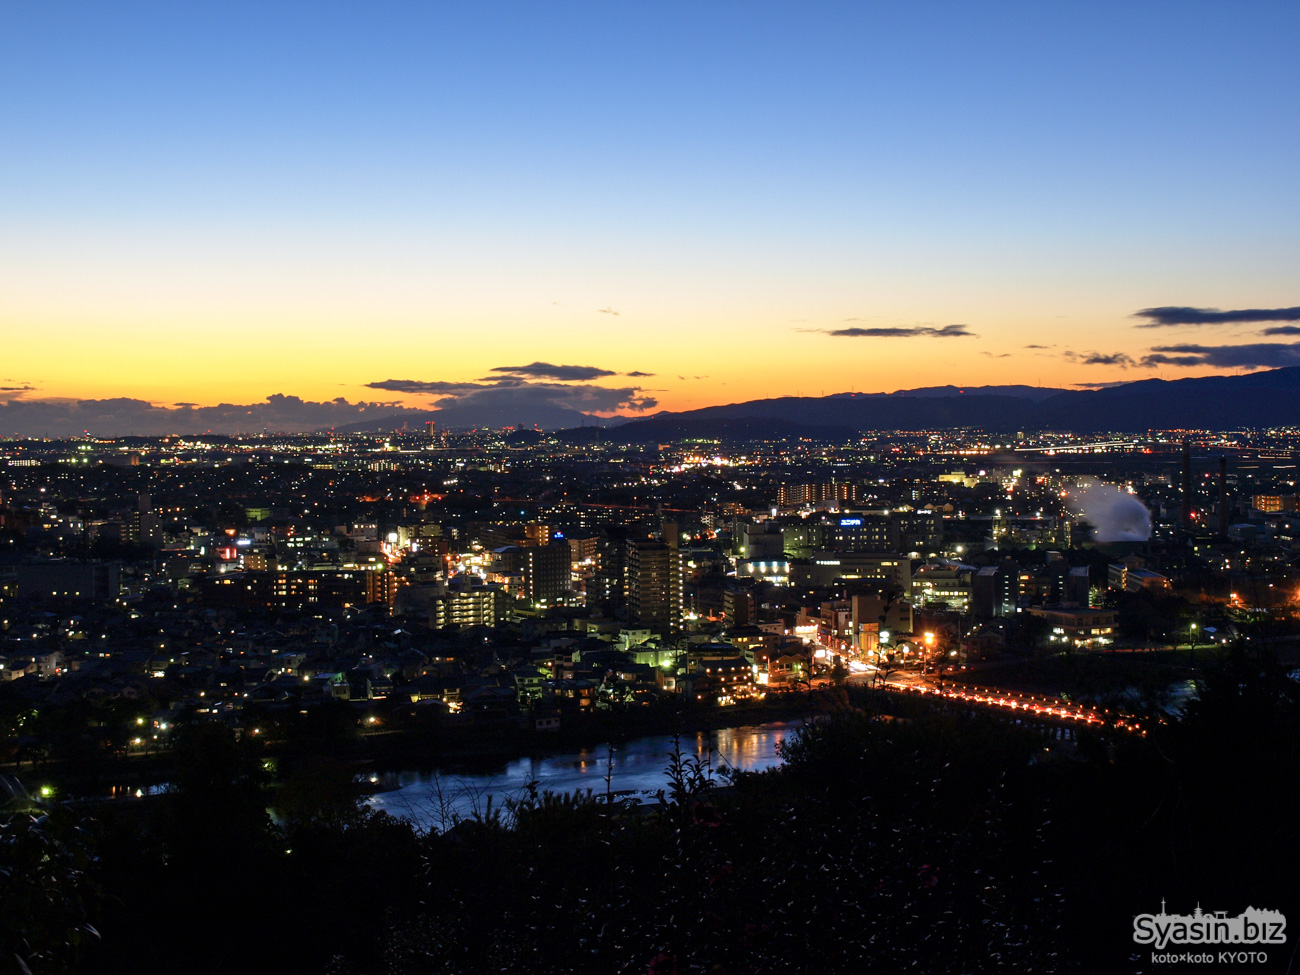 大吉山展望台の夜景 – 京都府宇治市